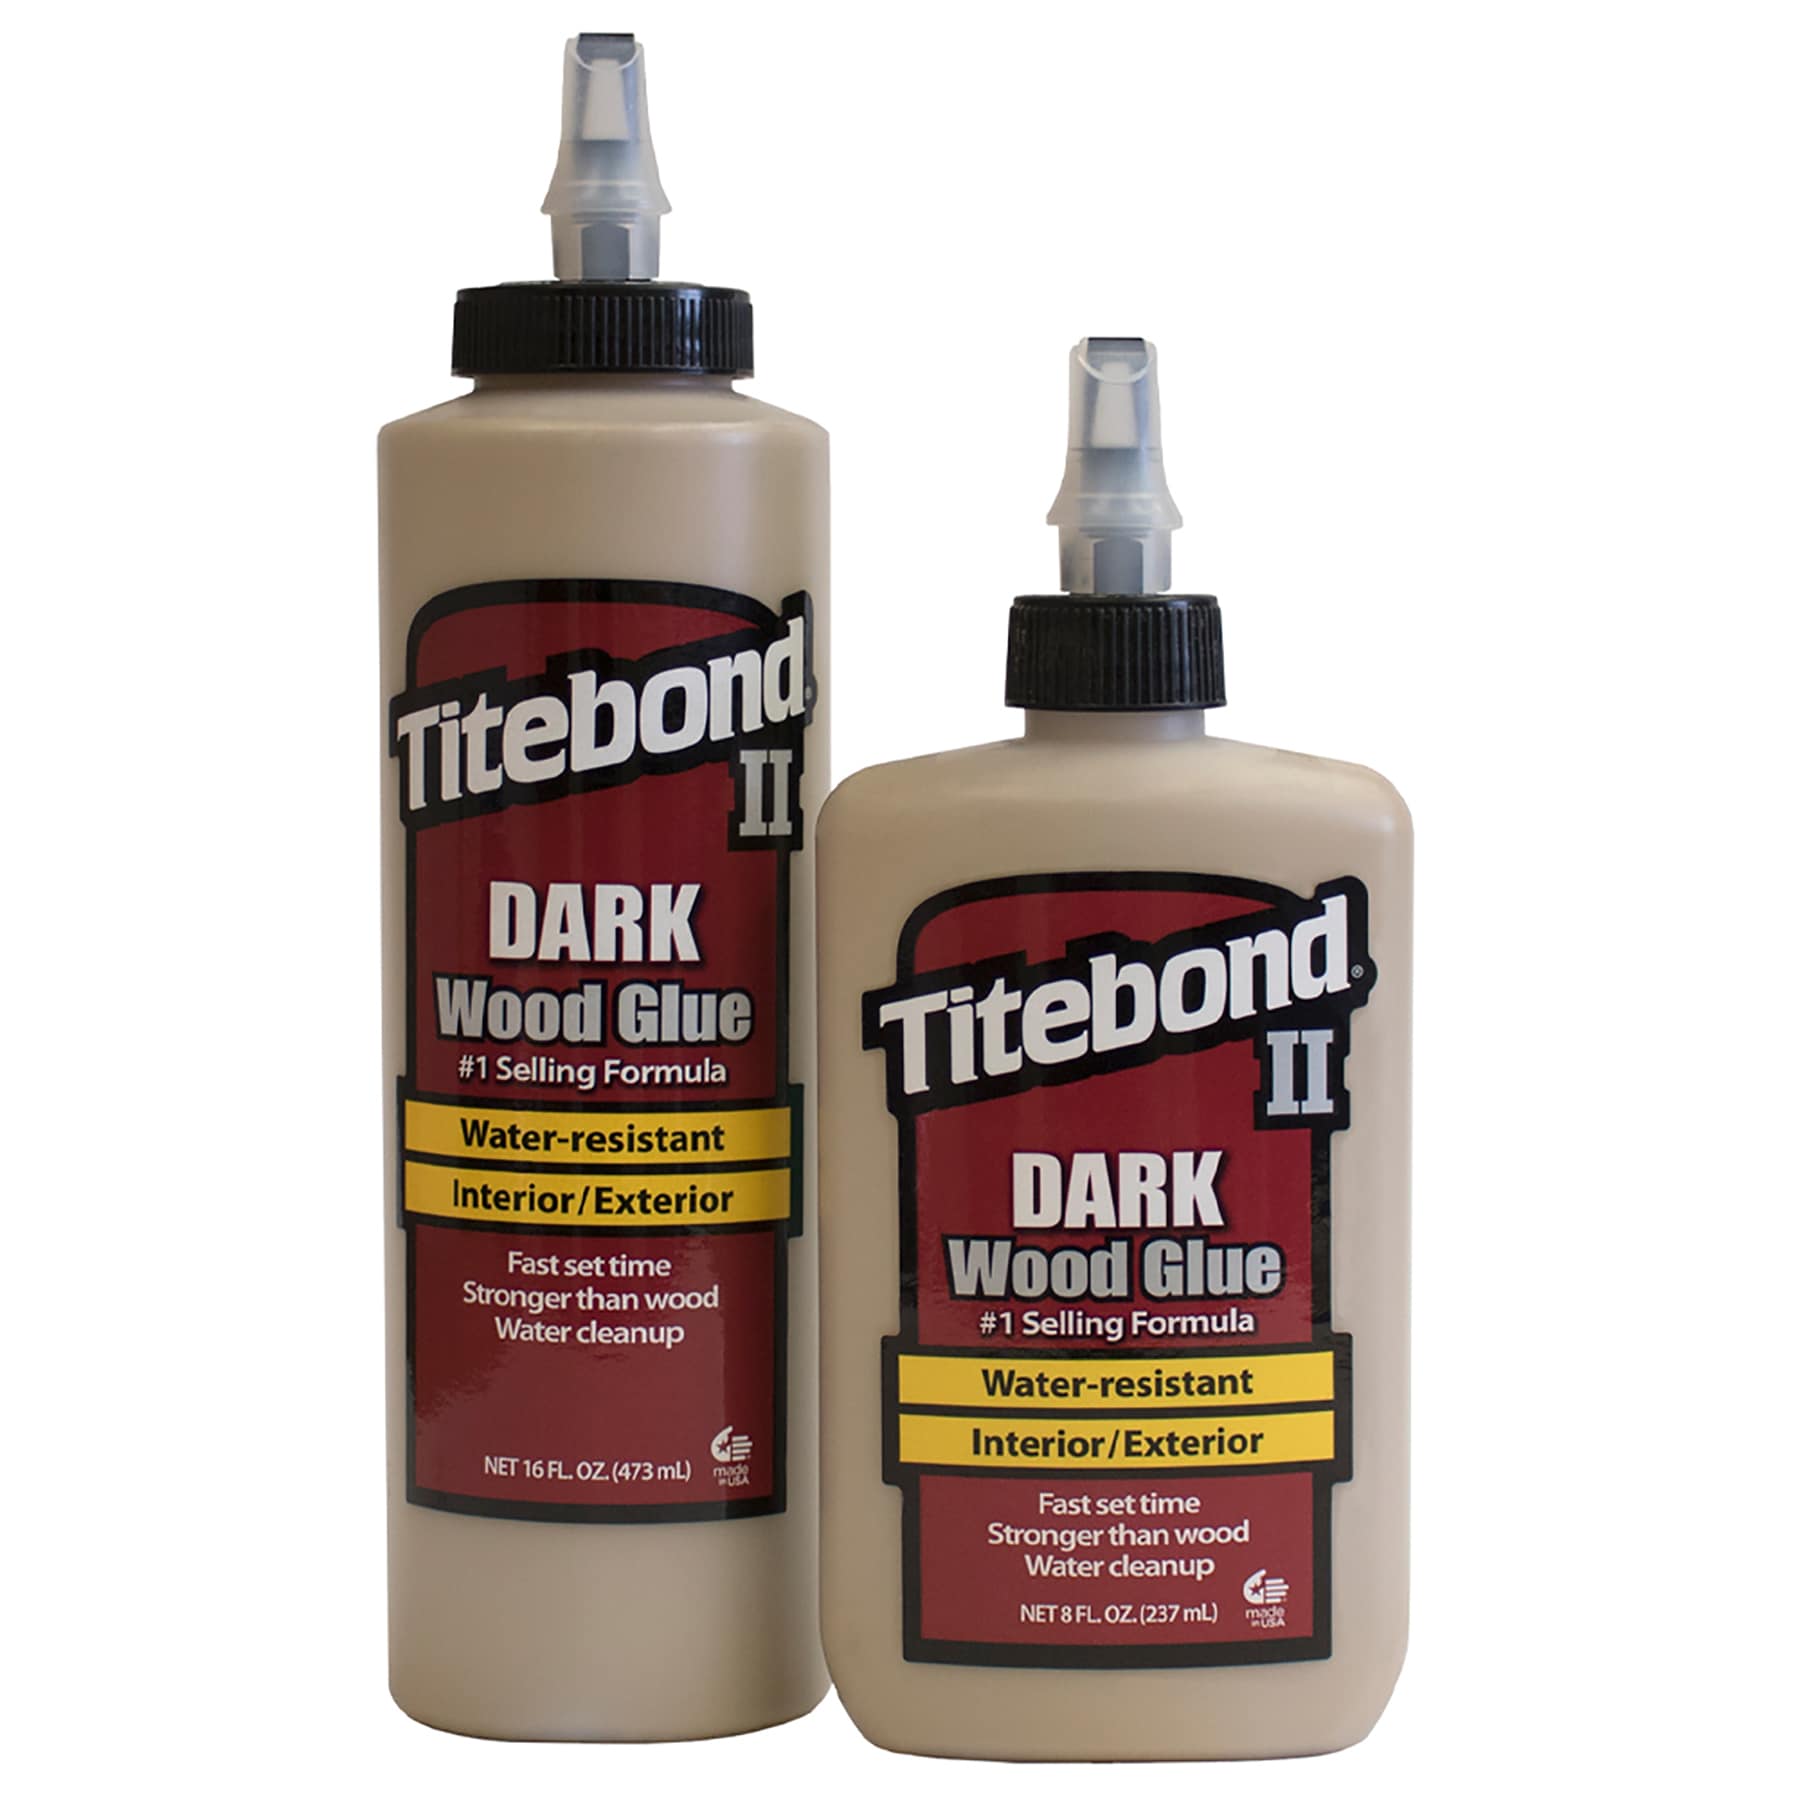 8 oz. Titebond III Ultimate Wood Glue (12-Pack)